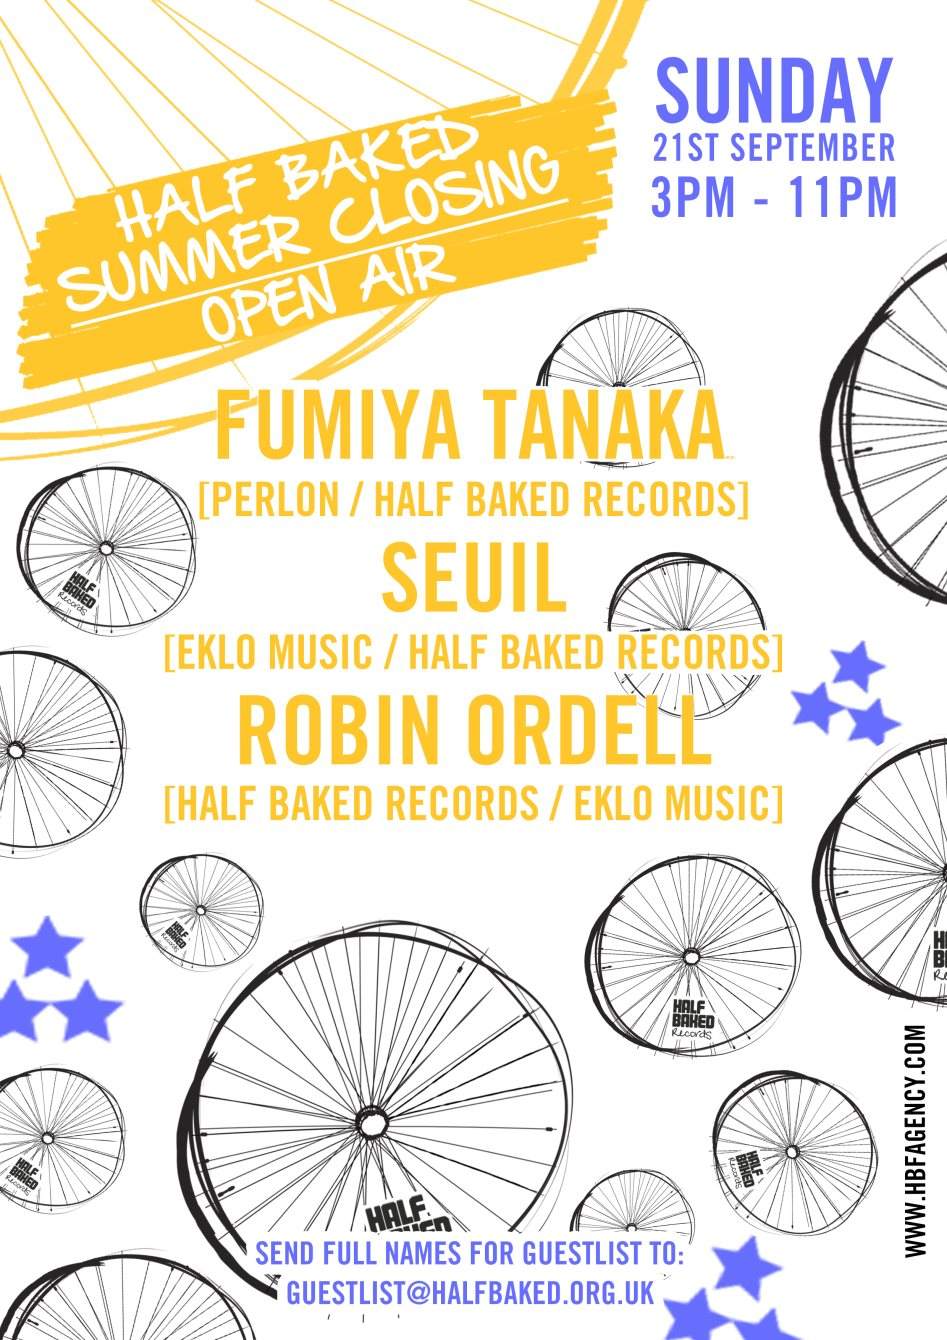 Half Baked Summer Closing Party with Fumiya Tanaka, Seuil + Robin Ordell - フライヤー表